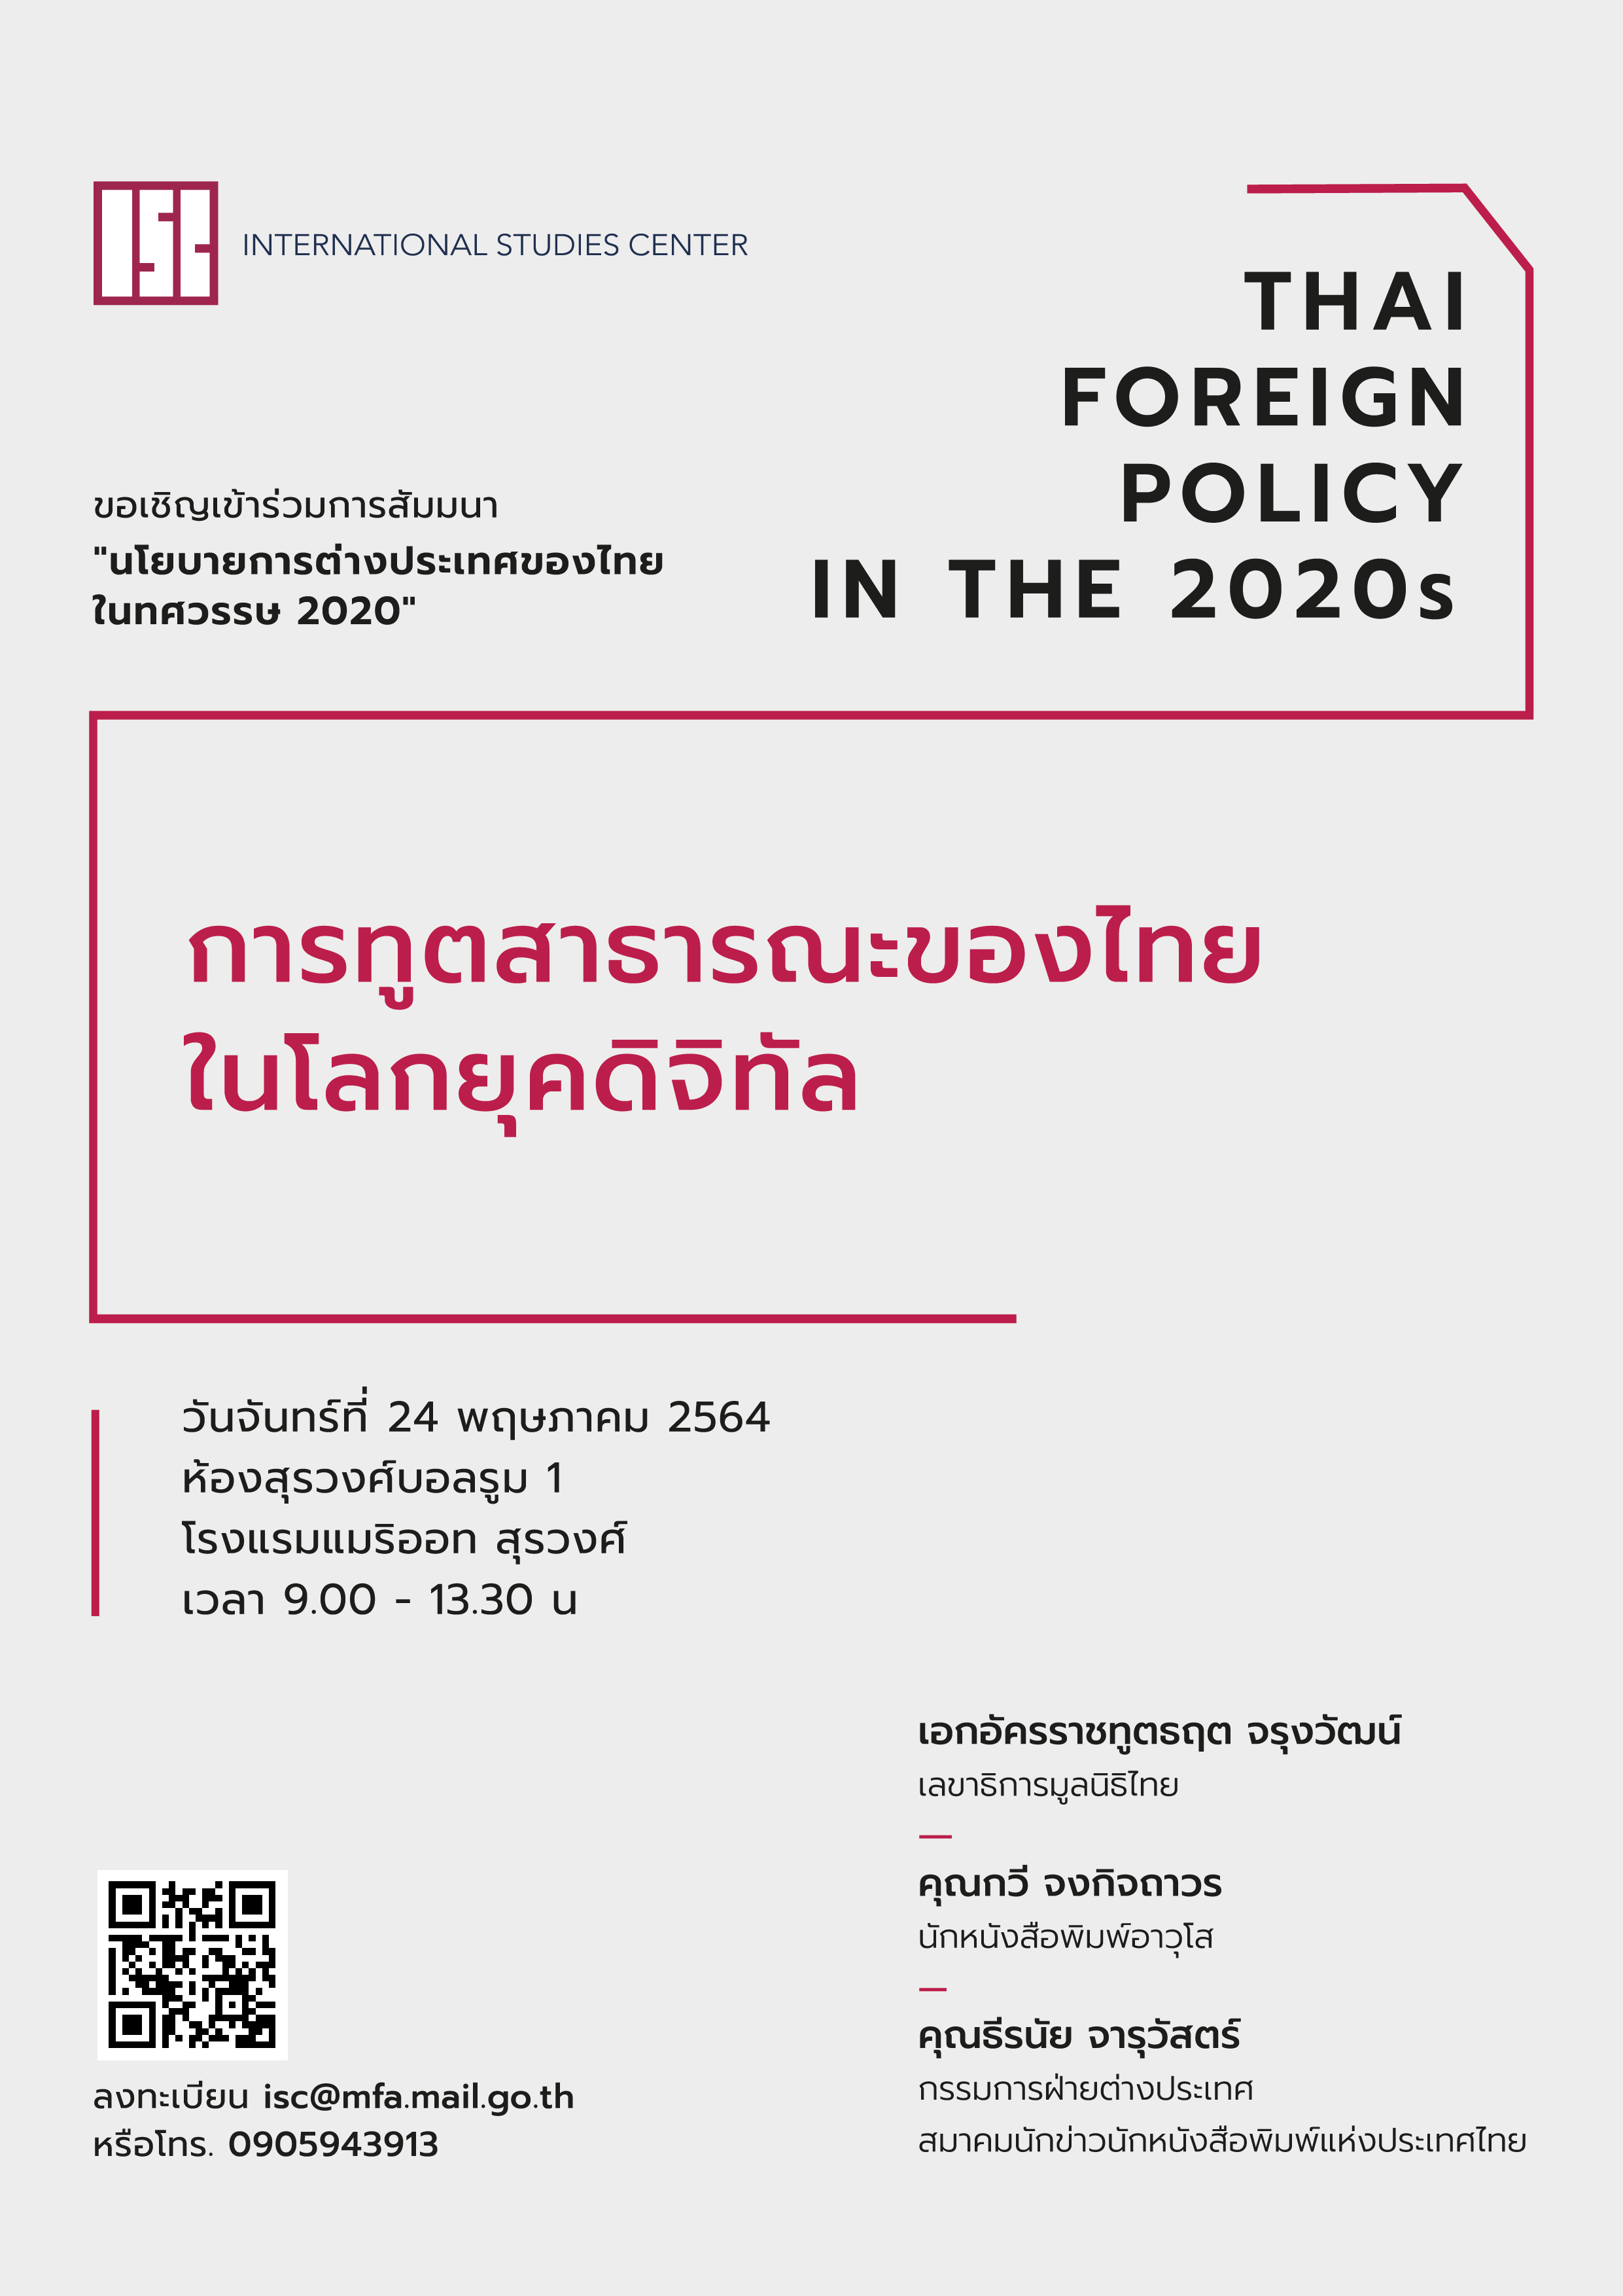 Seminar_ThaiForeignPolicy2020s-QR-02